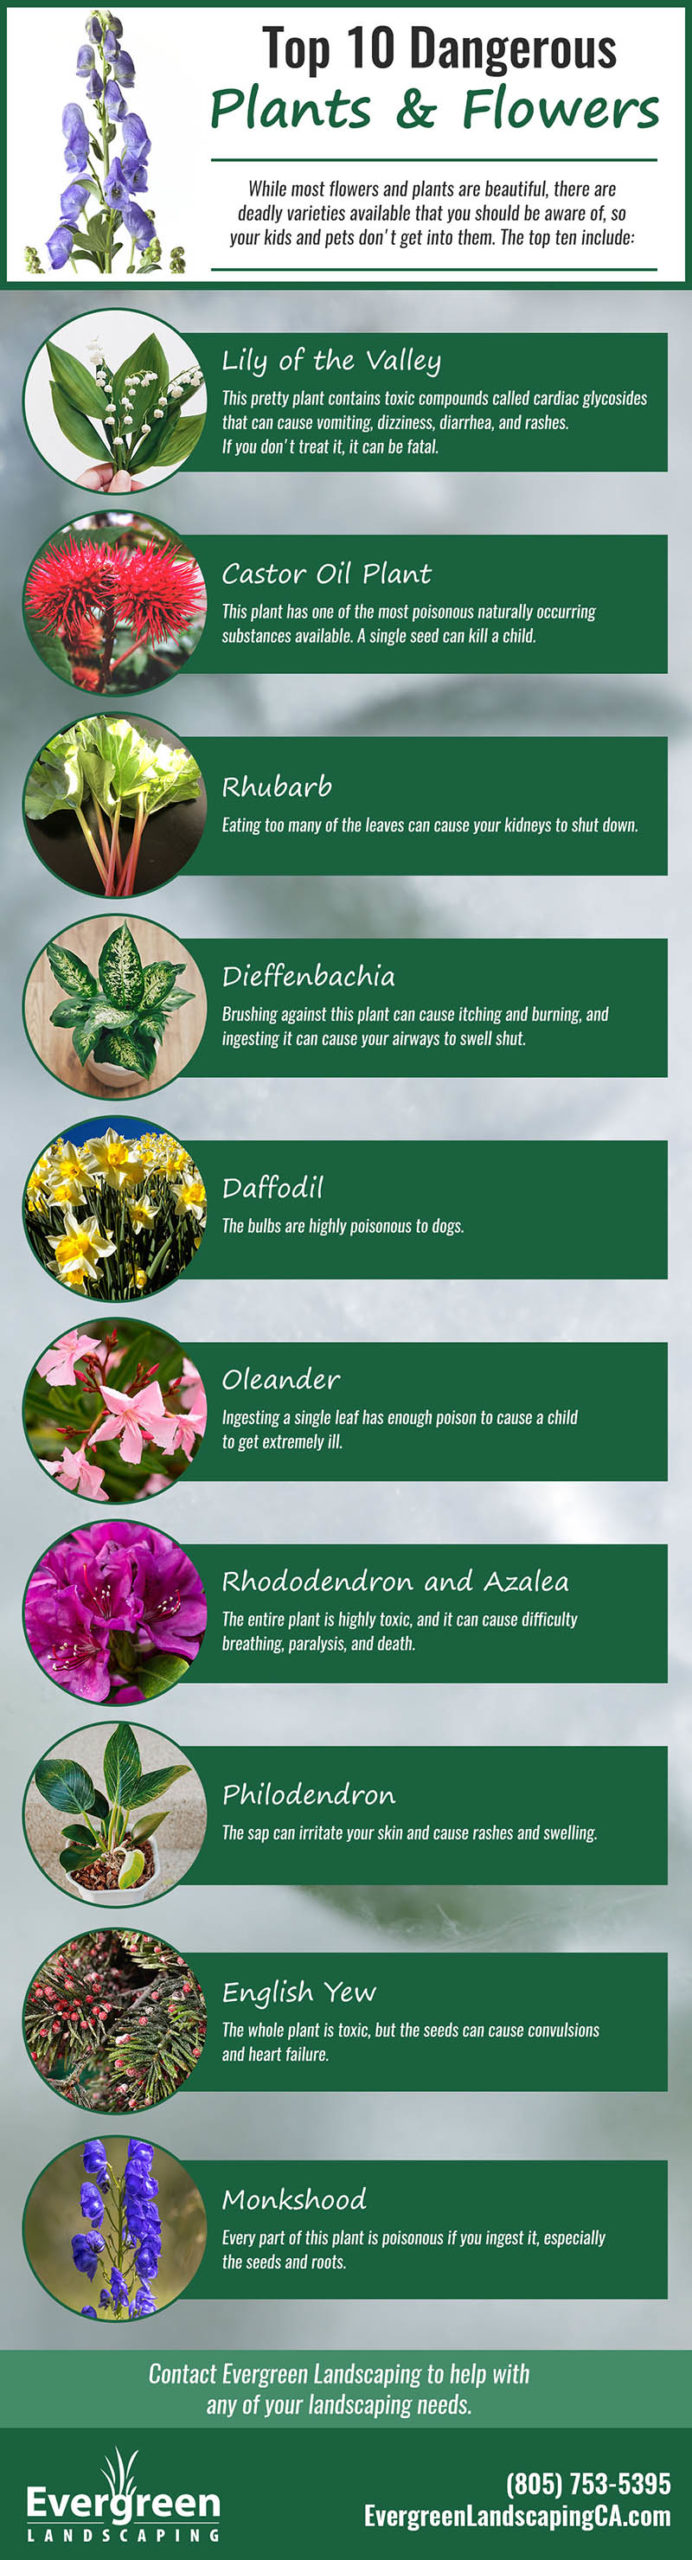 Top Ten Dangerous Plants and Flowers